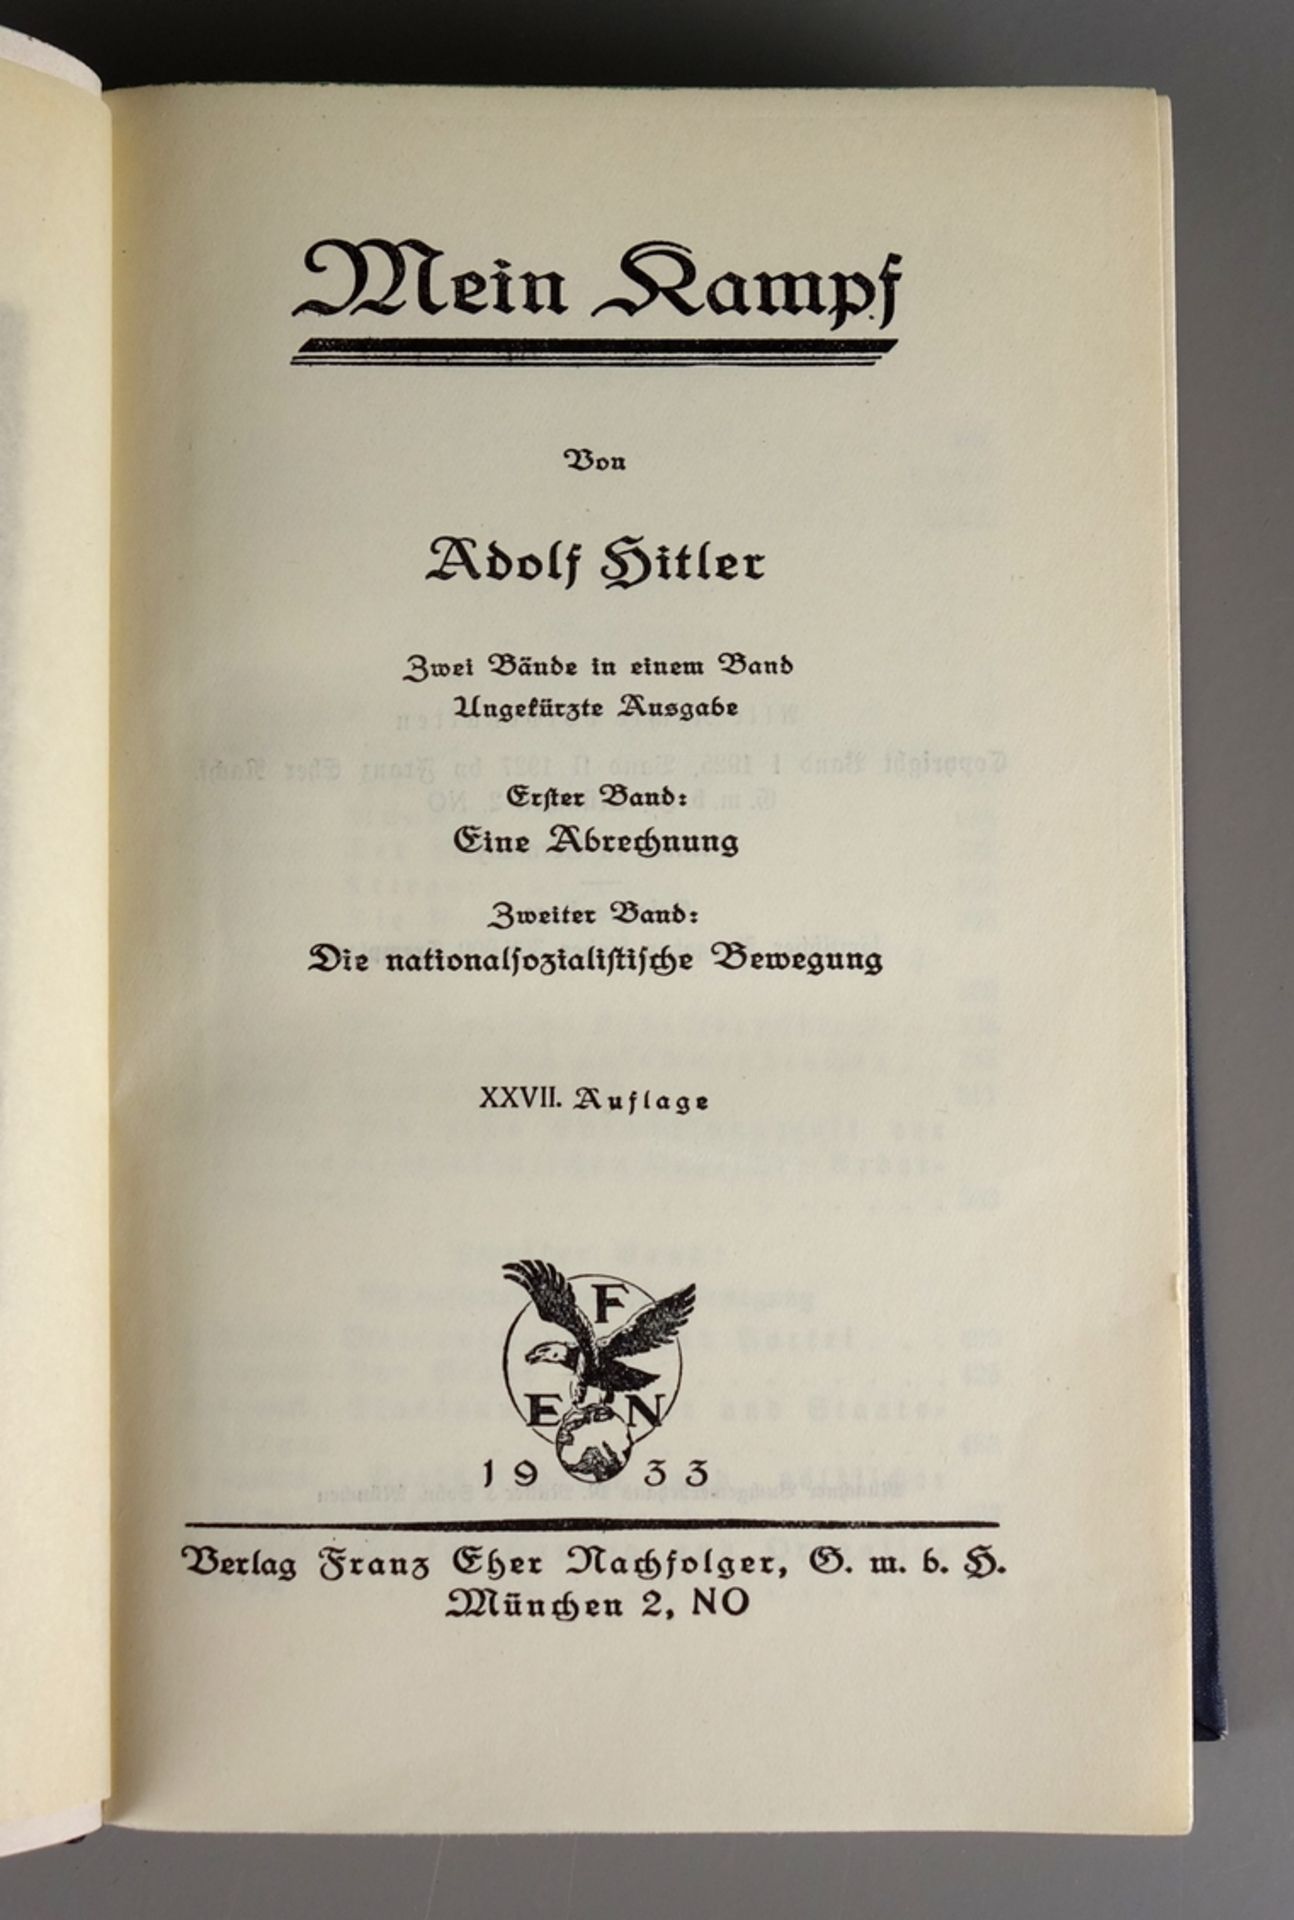 Mein Kampf, Adolf Hitler, 1933, XXVII.Auflage, 2 Bände in einem Band, ungekürzt - Bild 2 aus 3